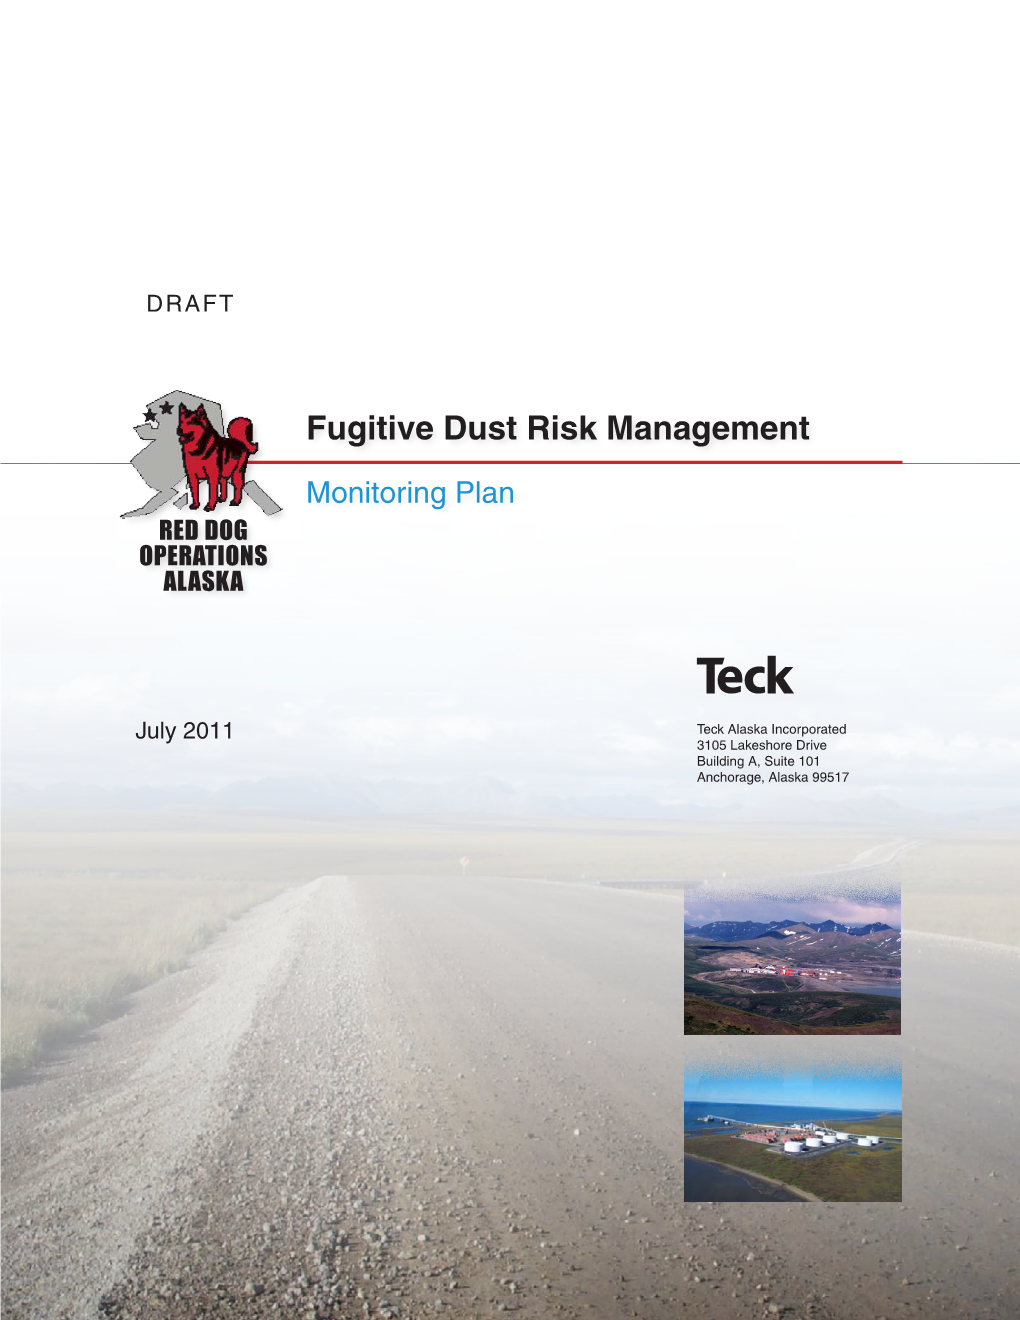 Fugitive Dust Risk Plan